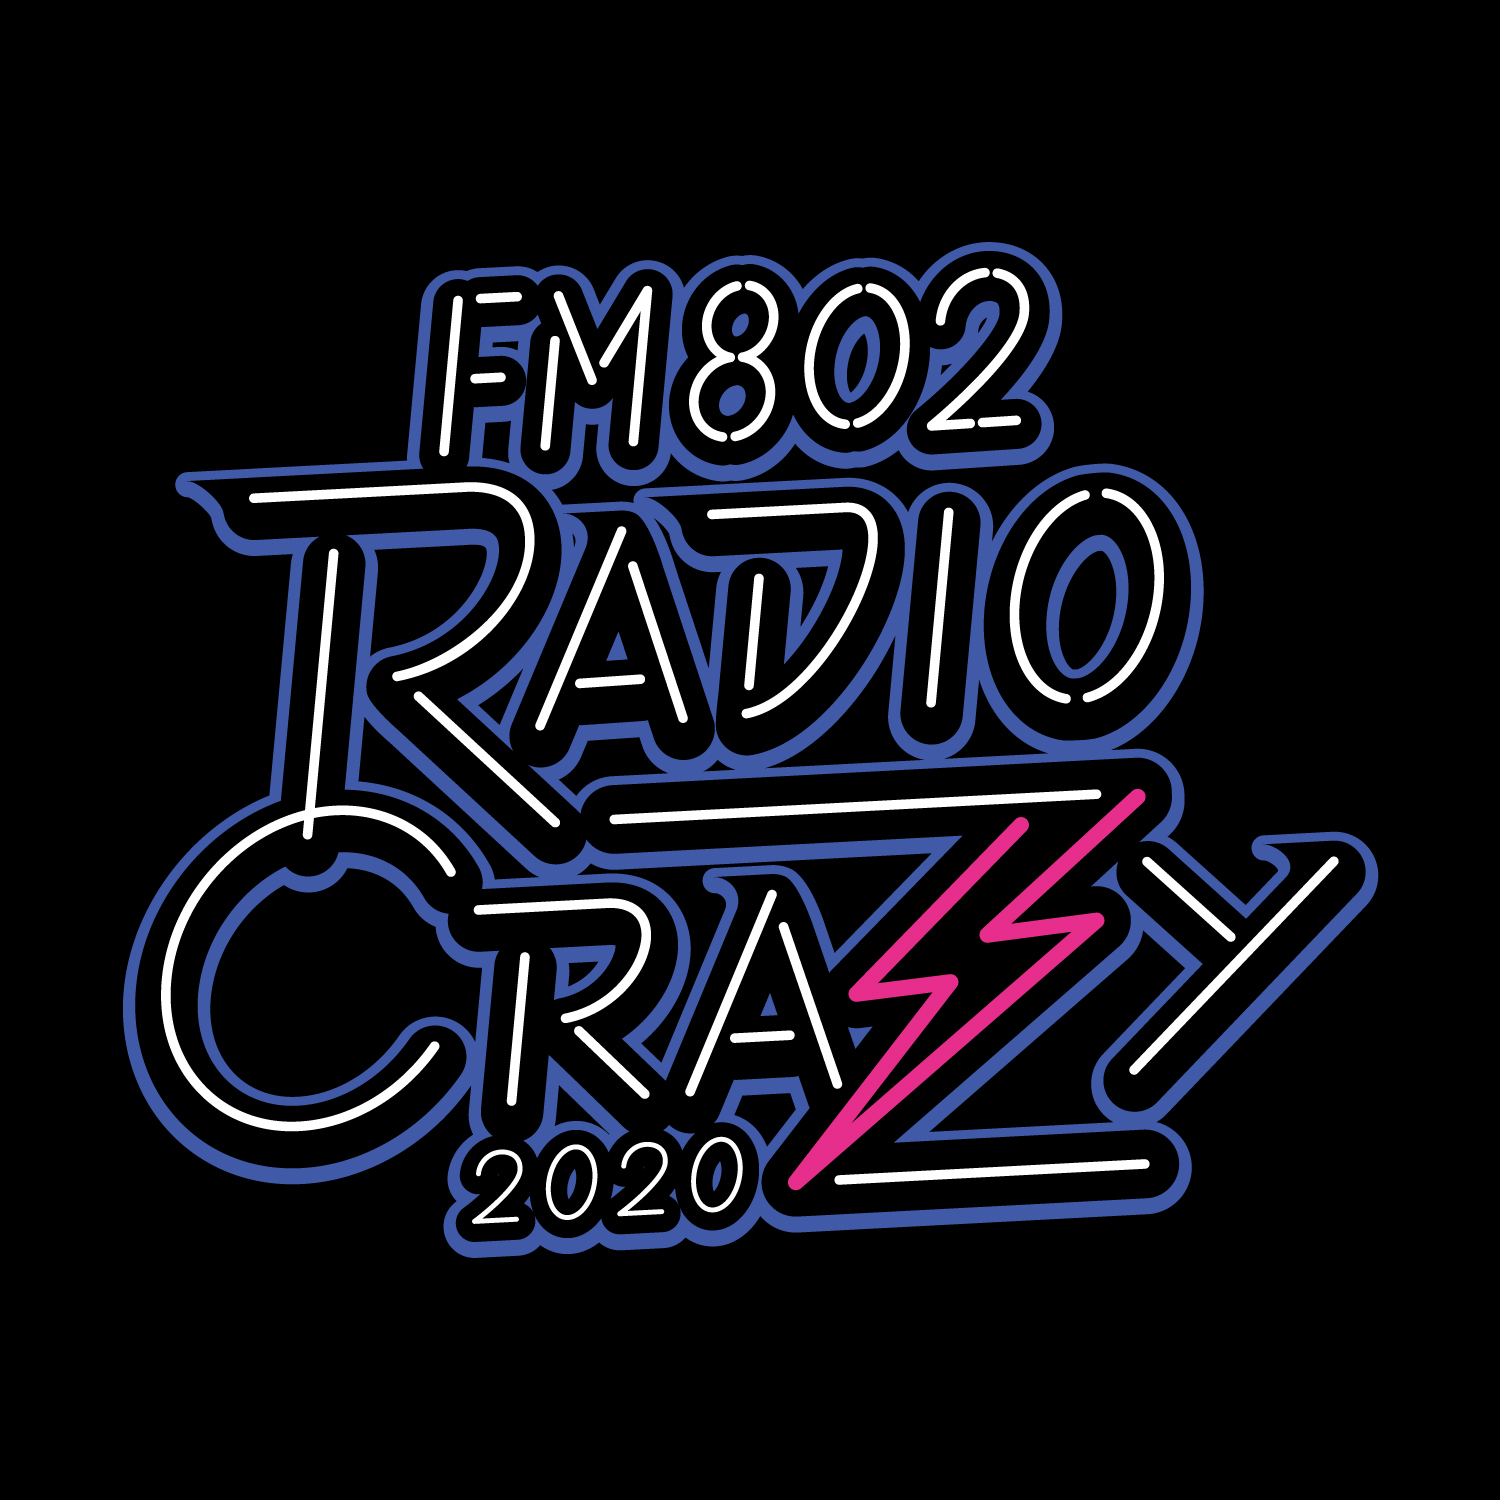 【大阪】RADIO CRAZY 2020 (インテックス大阪)※開催中止